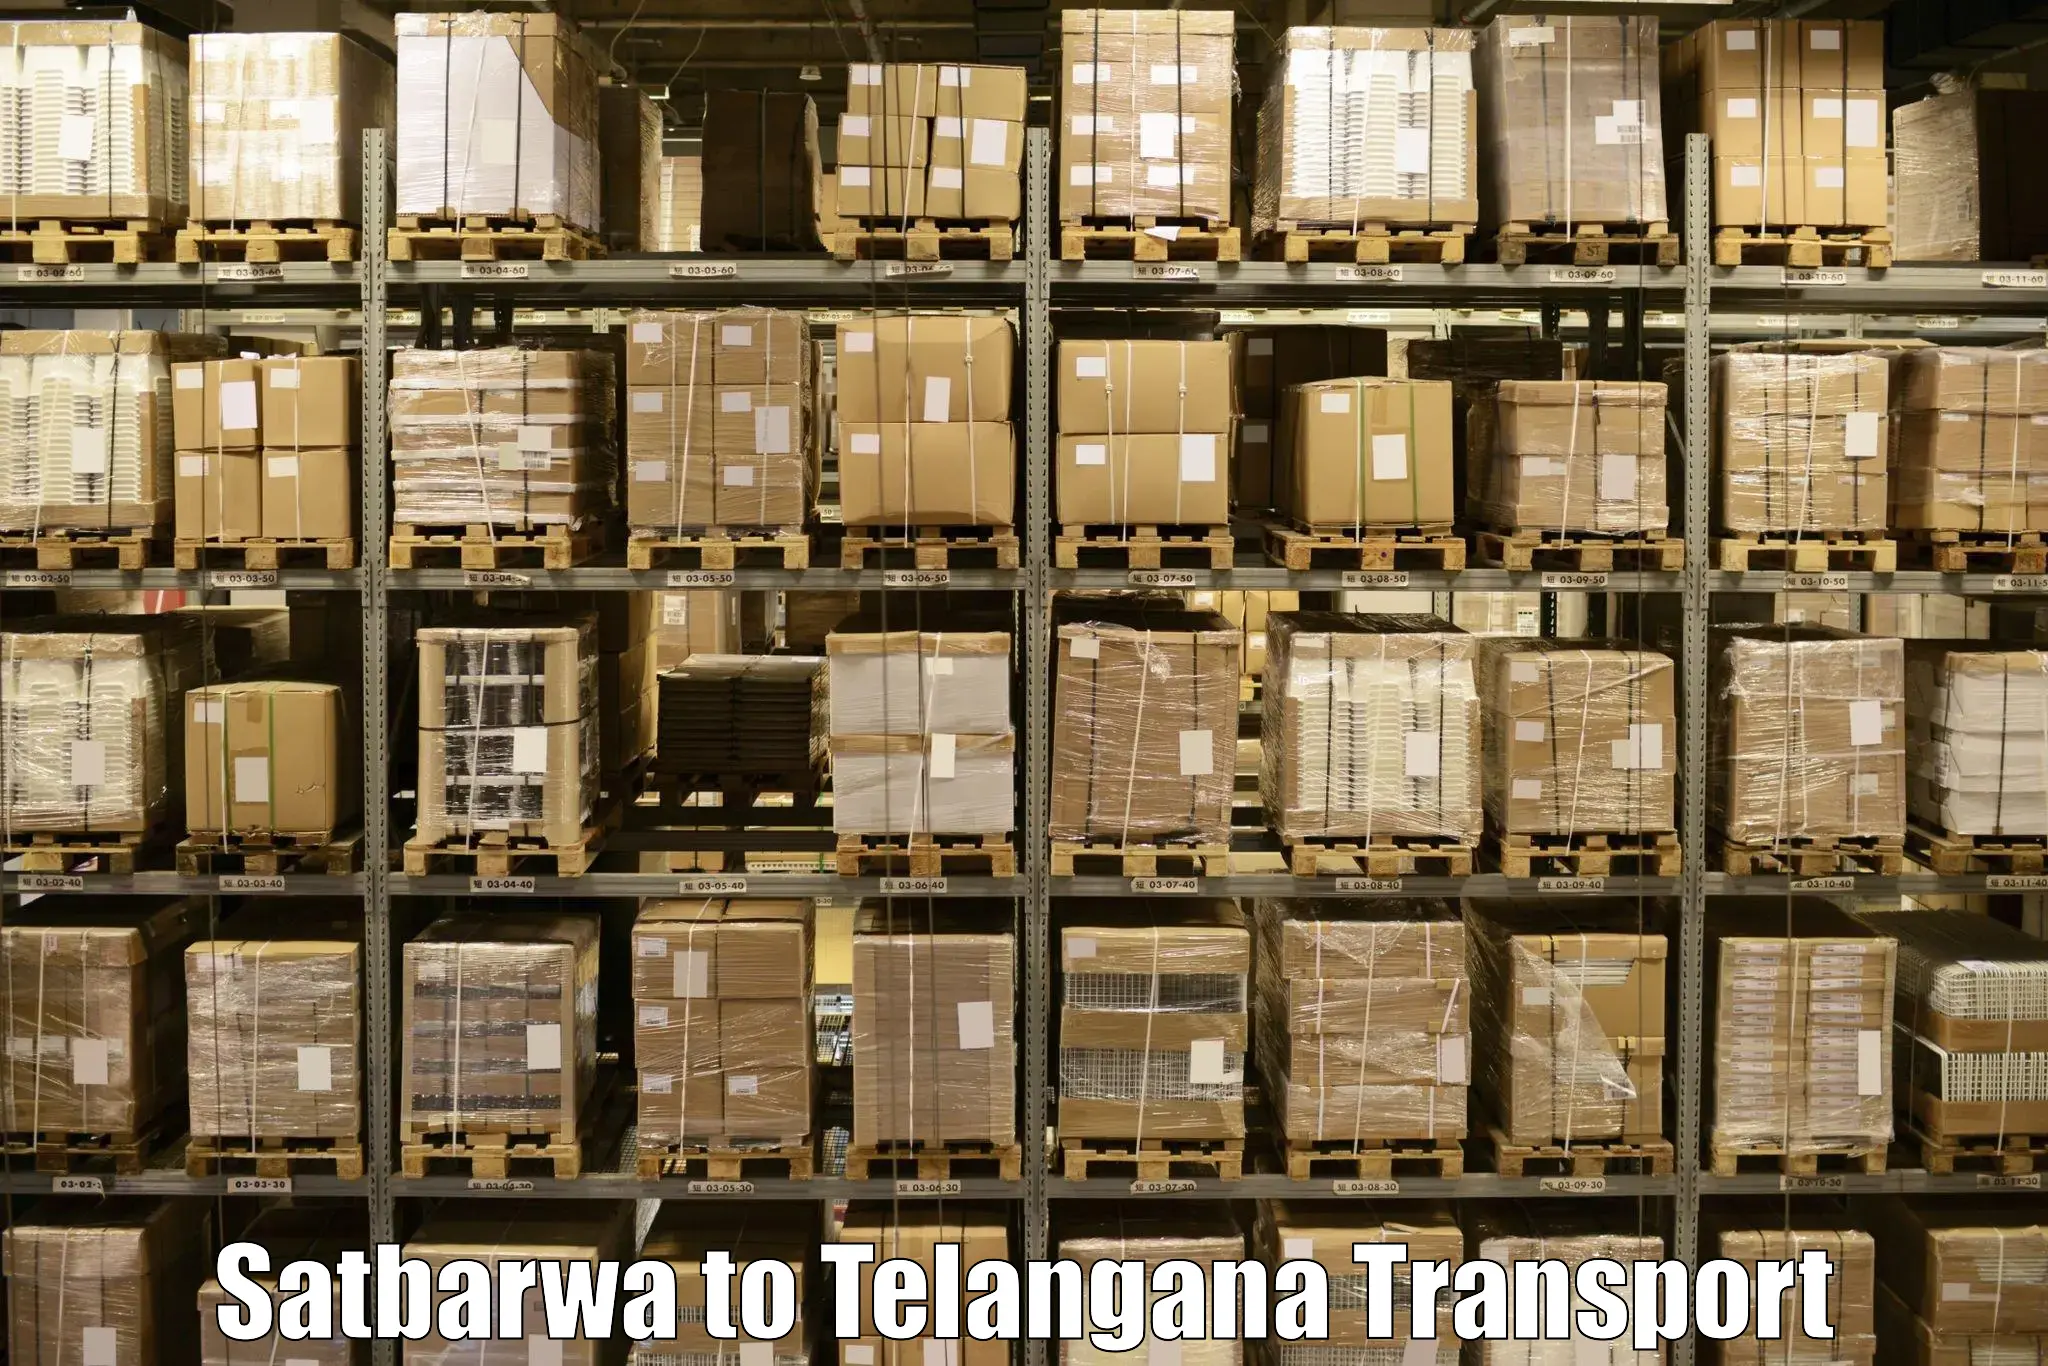 Container transport service Satbarwa to Khammam